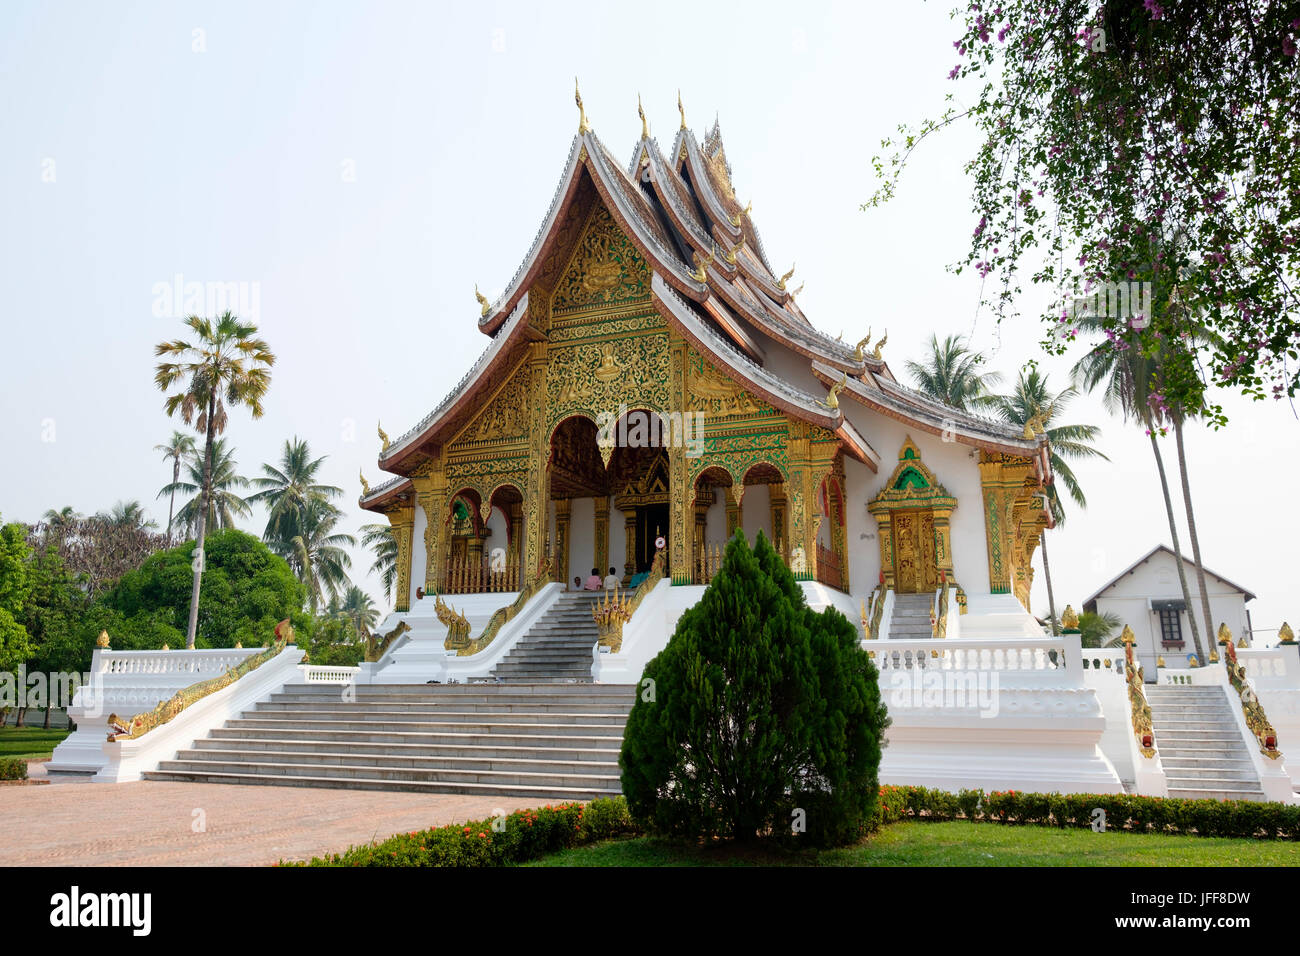 Haw Pha Bang temple at the Royal Palace grounds in Luang Prabang, Laos, Asia Stock Photo